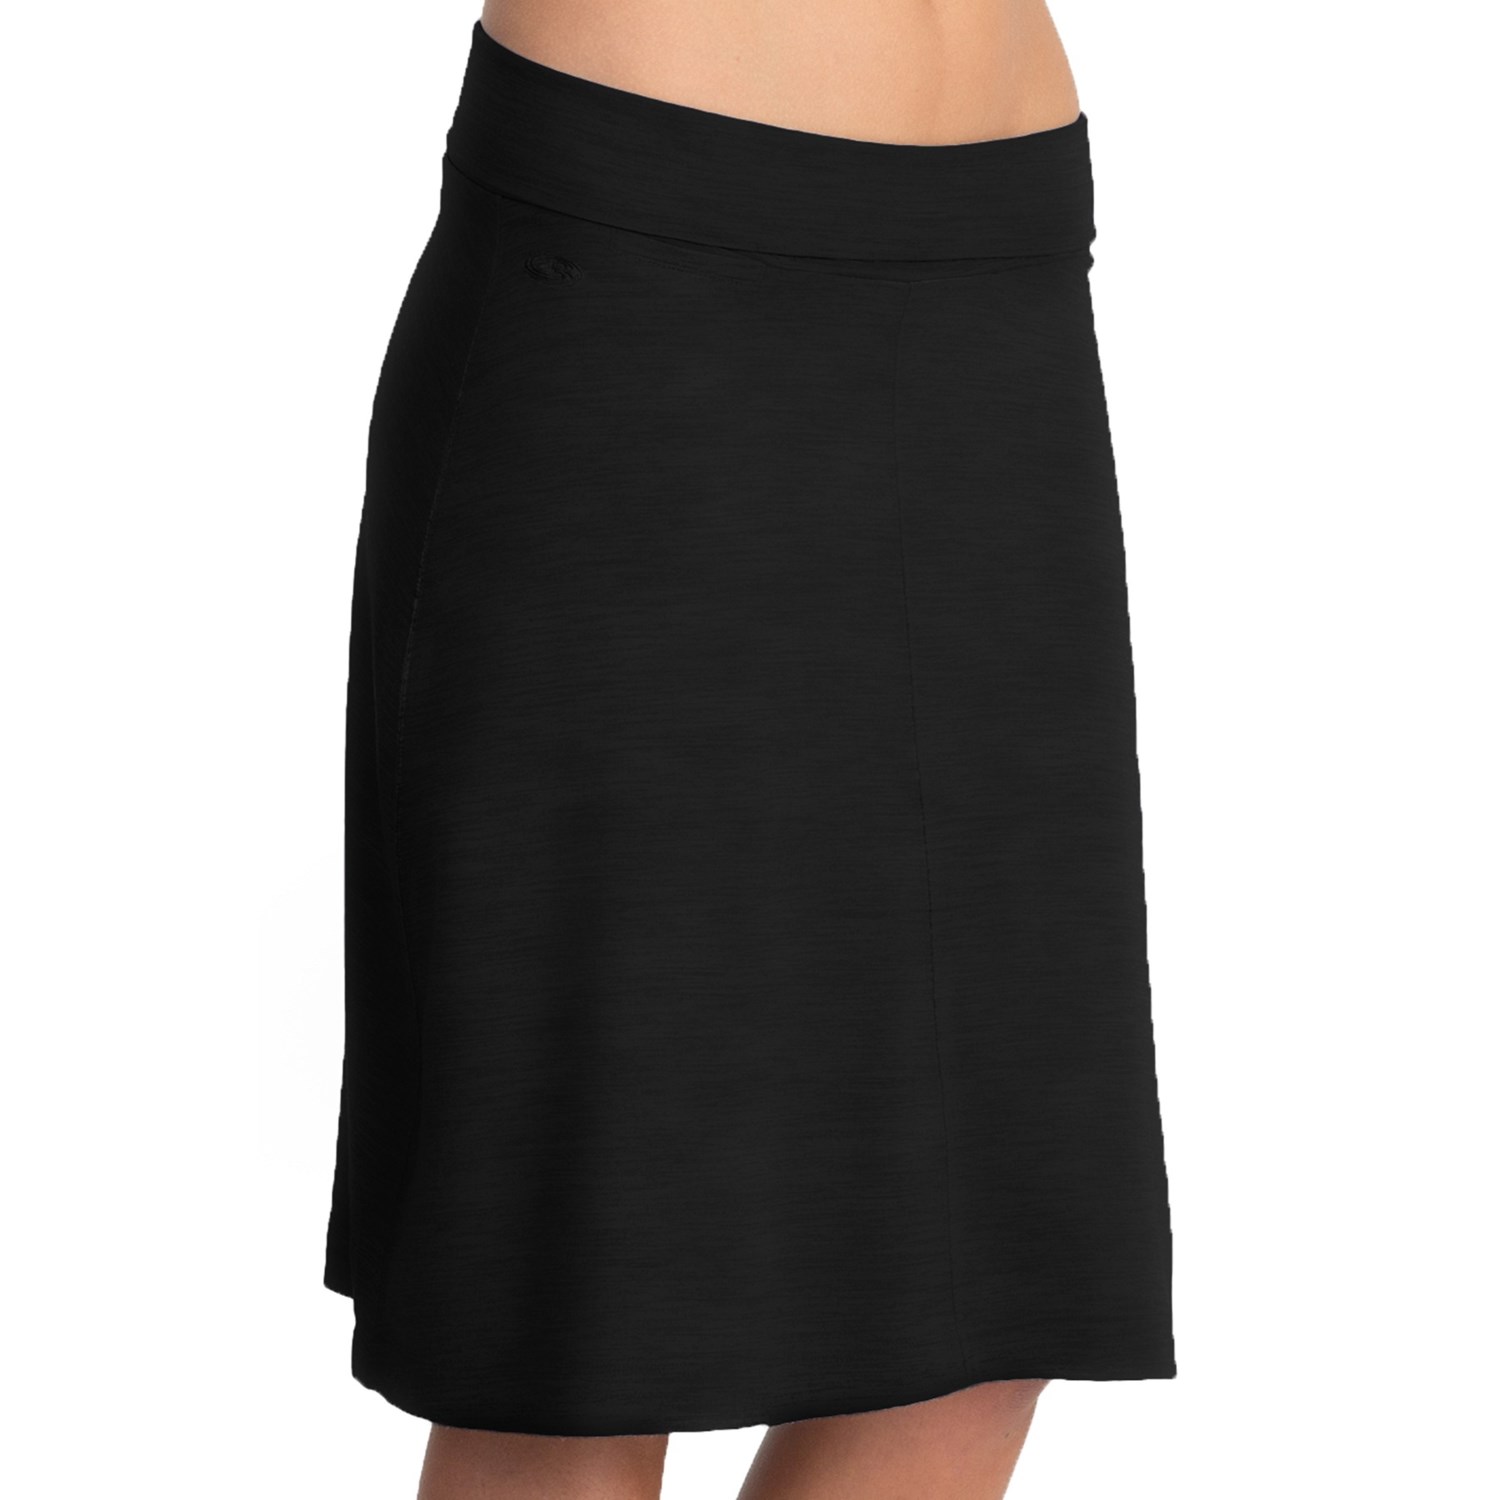 Icebreaker SF200 Maya Skirt - Merino Wool (For Women) - Save 31%